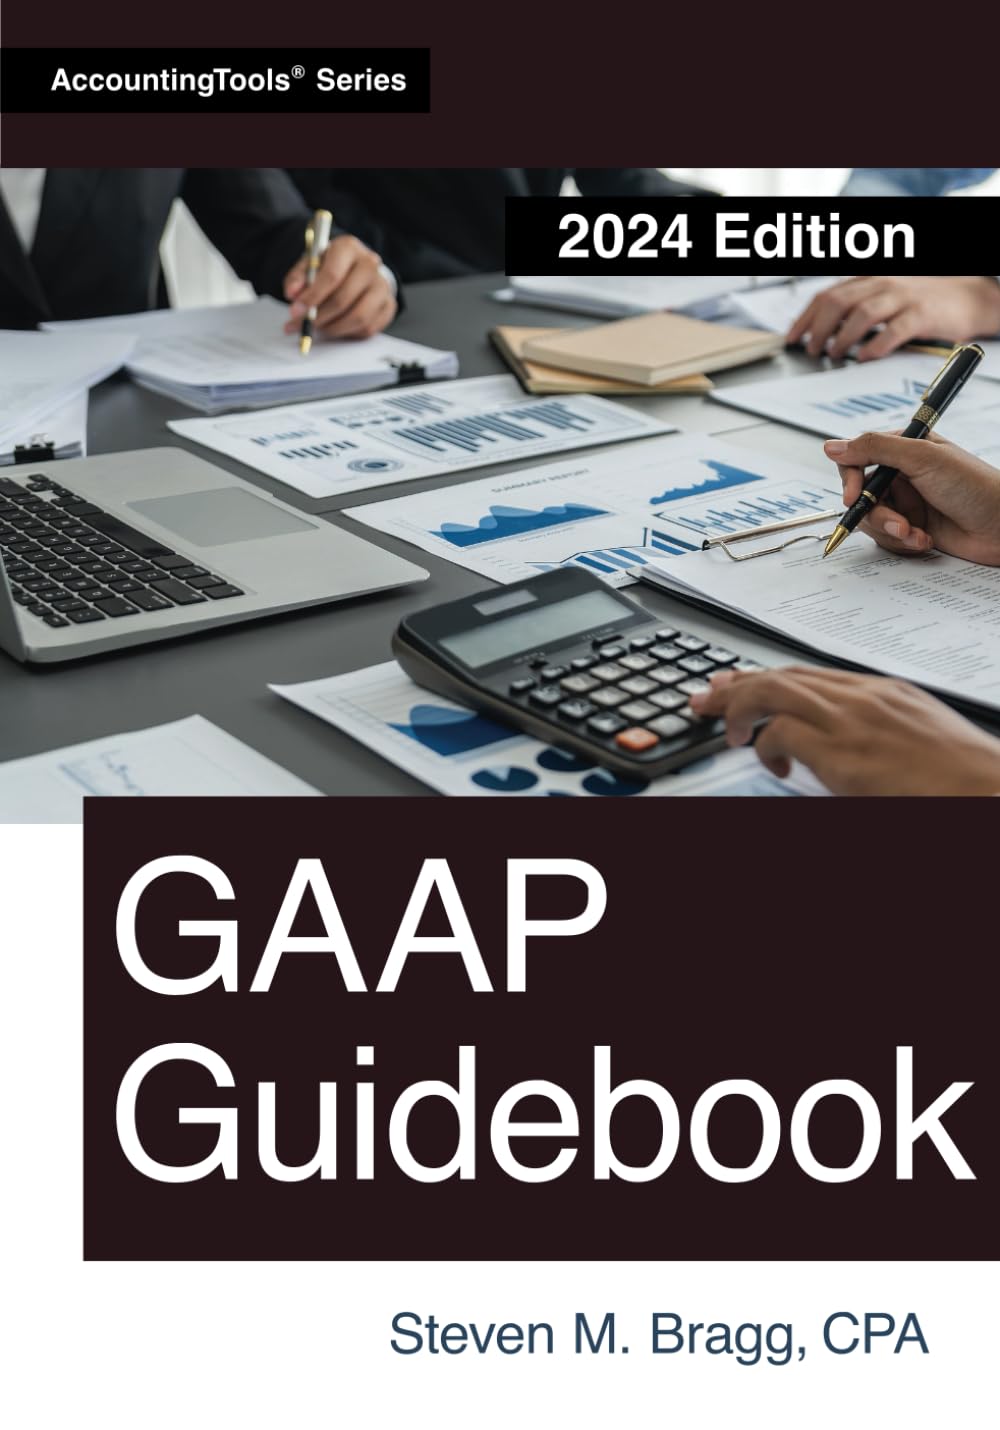 GAAP Guidebook: 2024 Edition